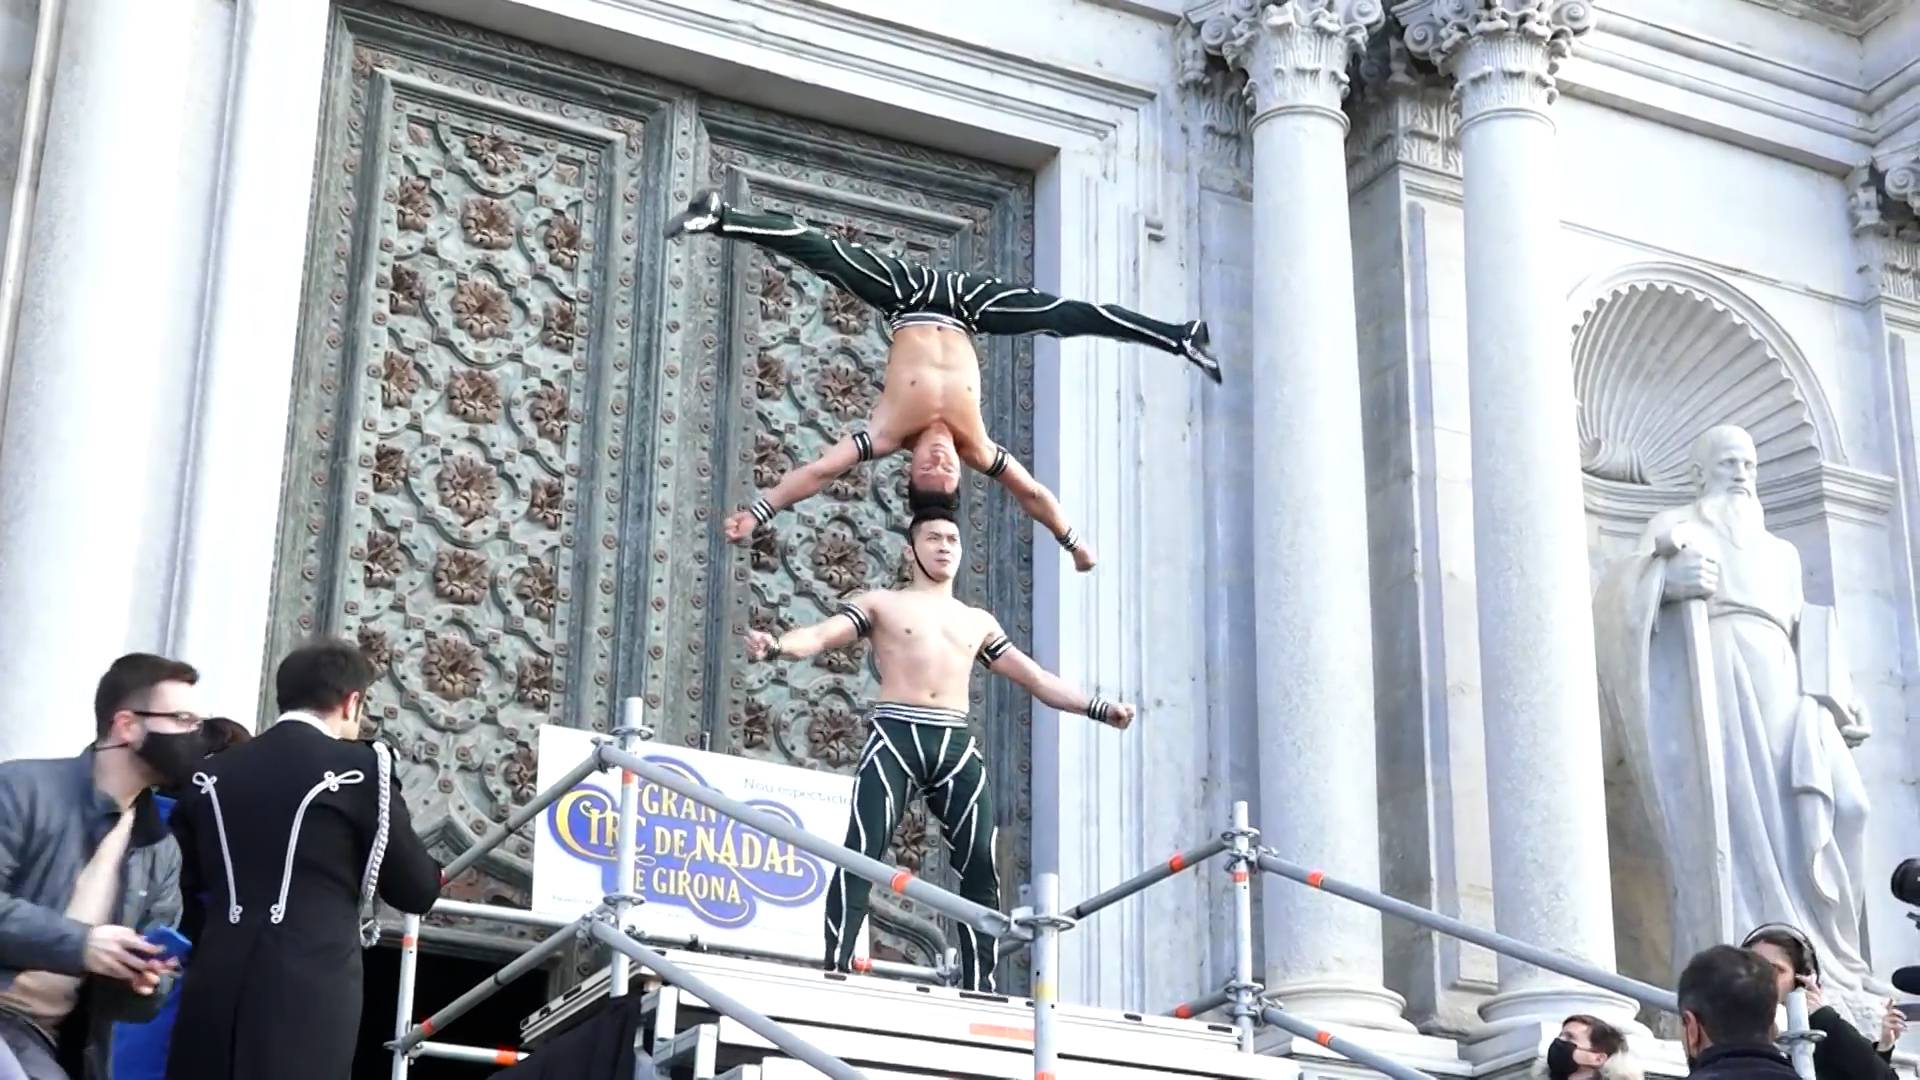 Братья-акробаты из Вьетнама установили новый мировой рекорд в Испании Общество